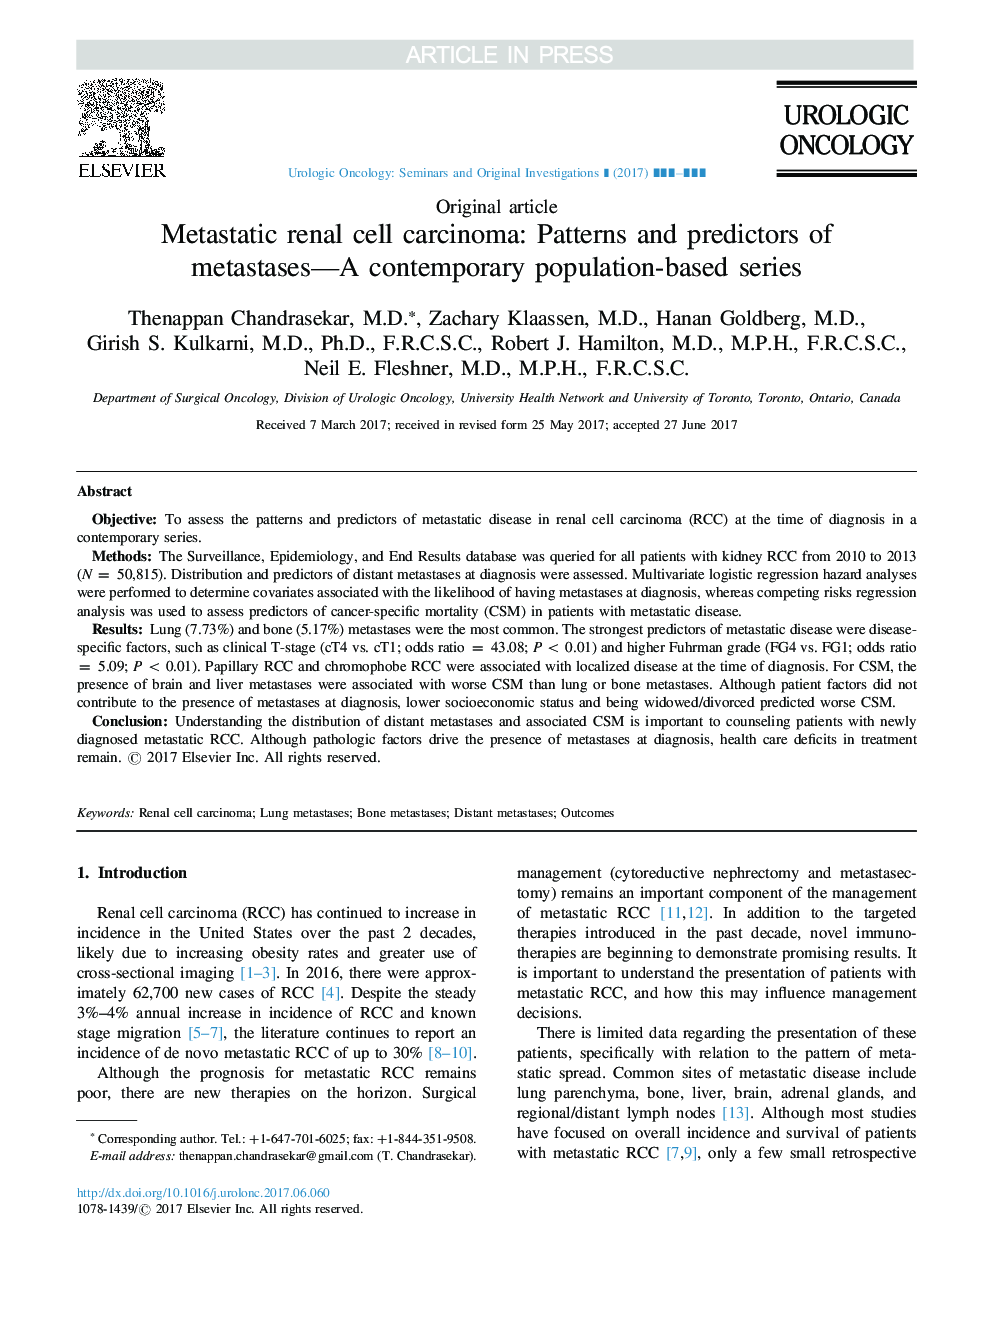 کارسینوم سلول های کلیه متاستاتیک: الگوهای و پیش بینی کننده های متاستاز - مجموعه های مبتنی بر جمعیت معاصر 